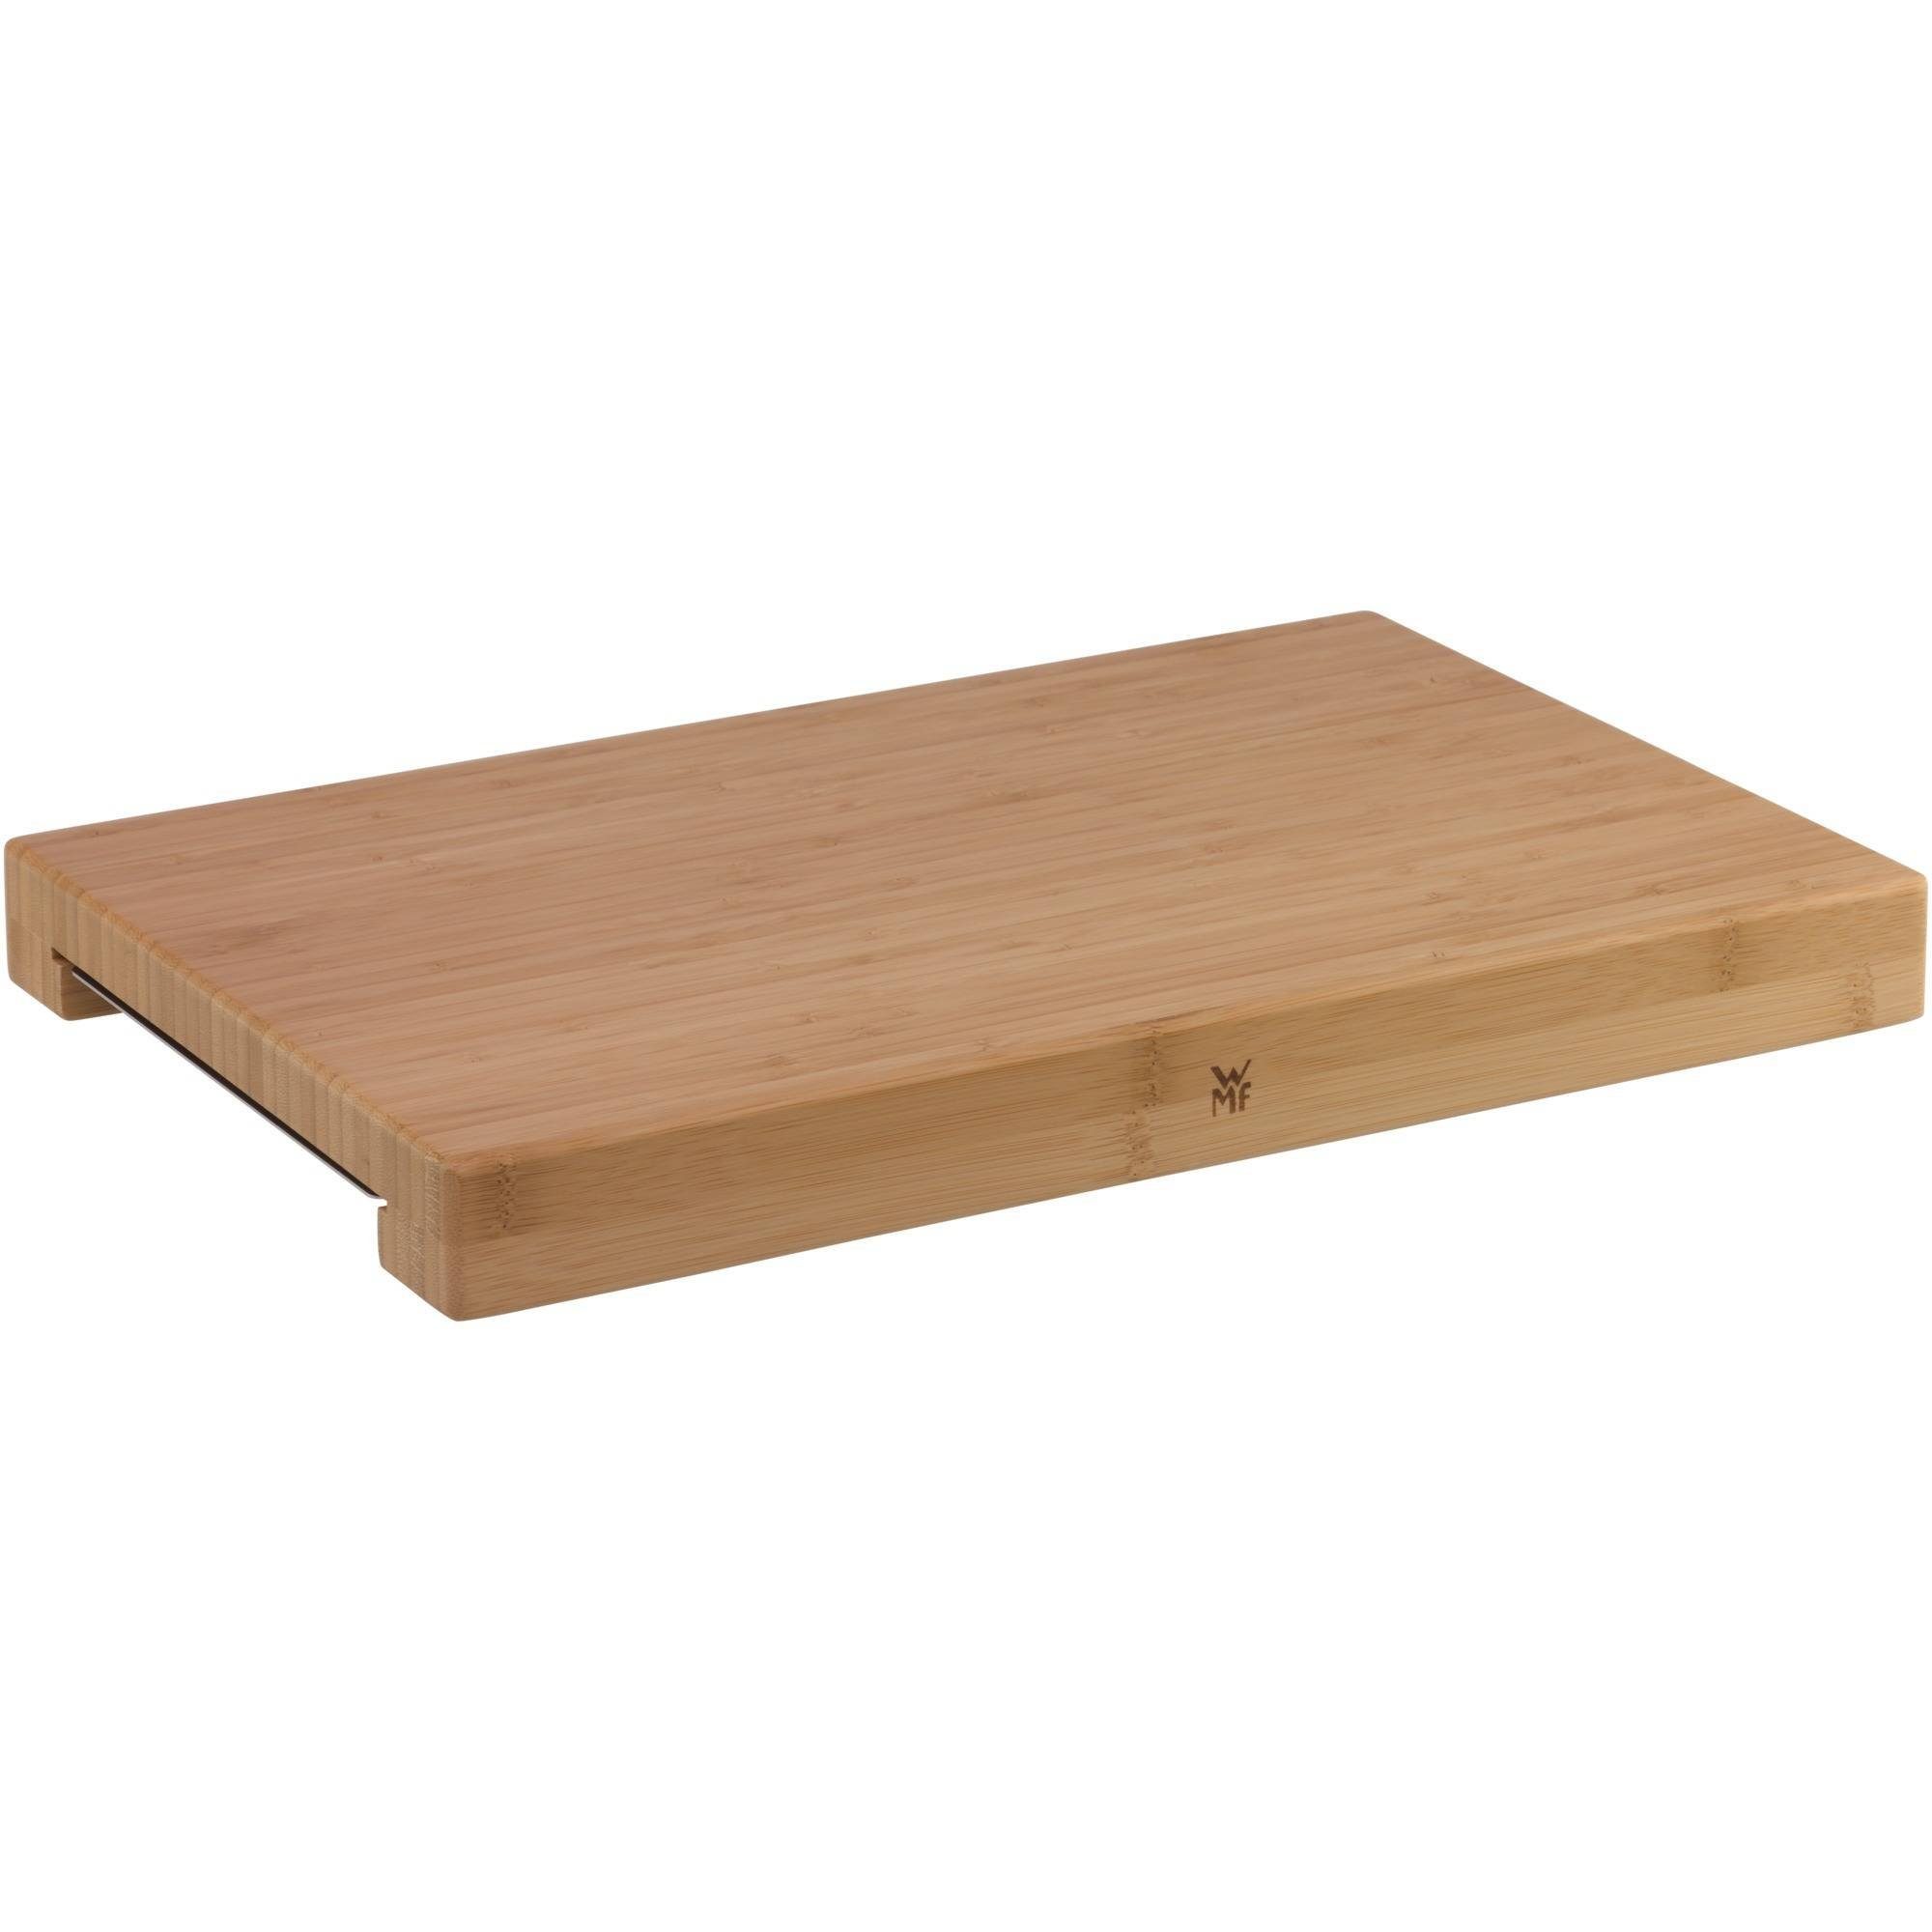 WMF Schneidebrett, Holz, (44 x 27 x 4,8 cm), 1x Cromargan-Tablett /  Auffangschale